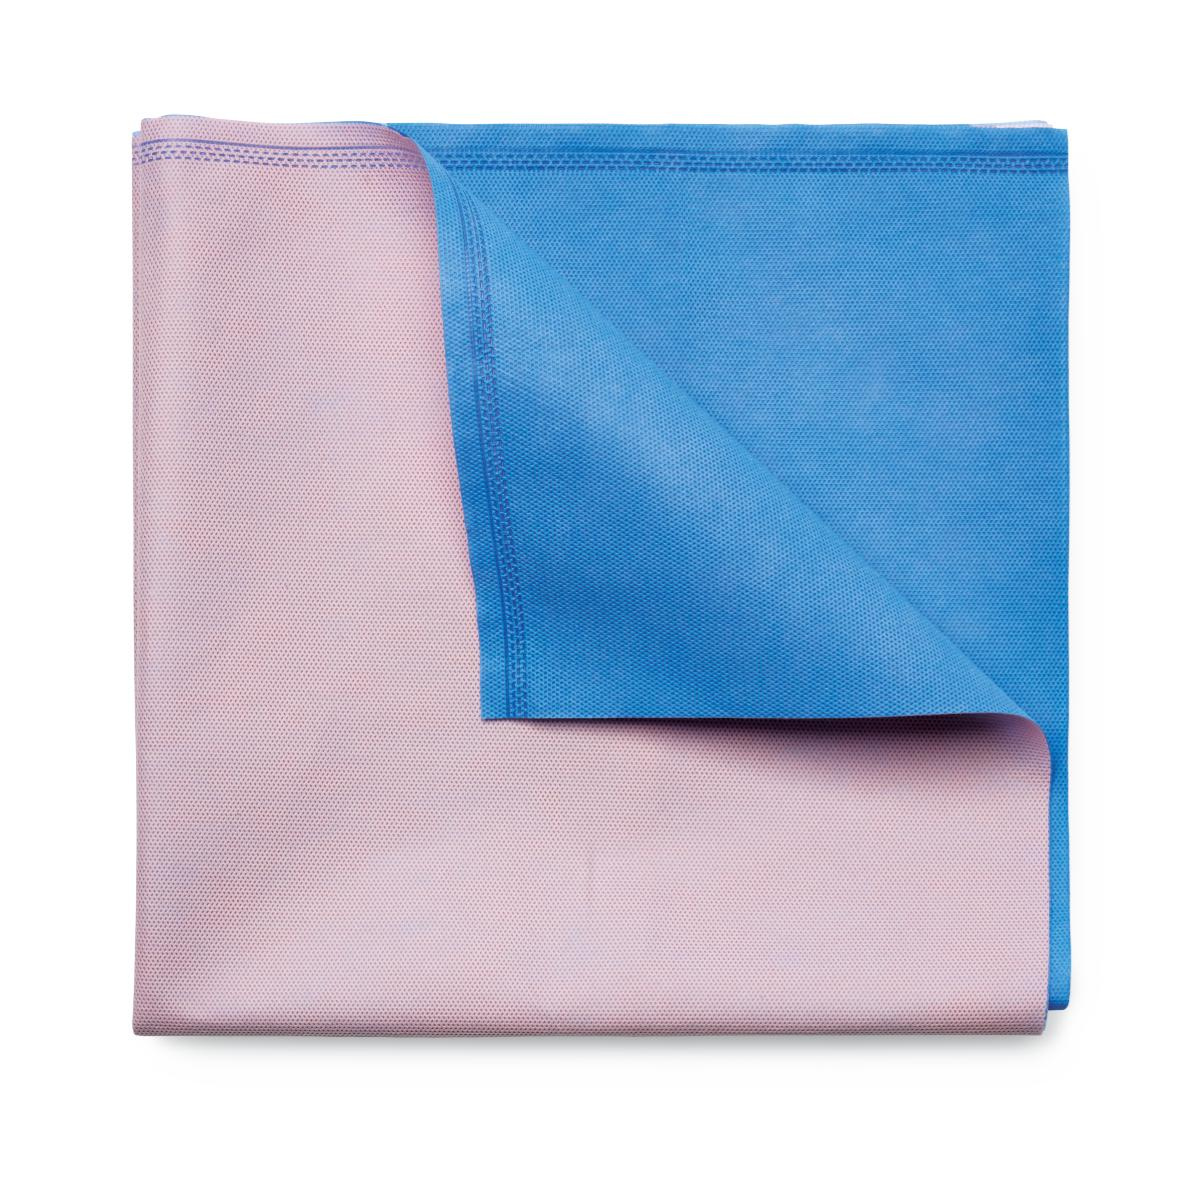 Gemini Sterilisation Wrap Dual Colour Pink/Blue 47gsm 76x76cm image 0